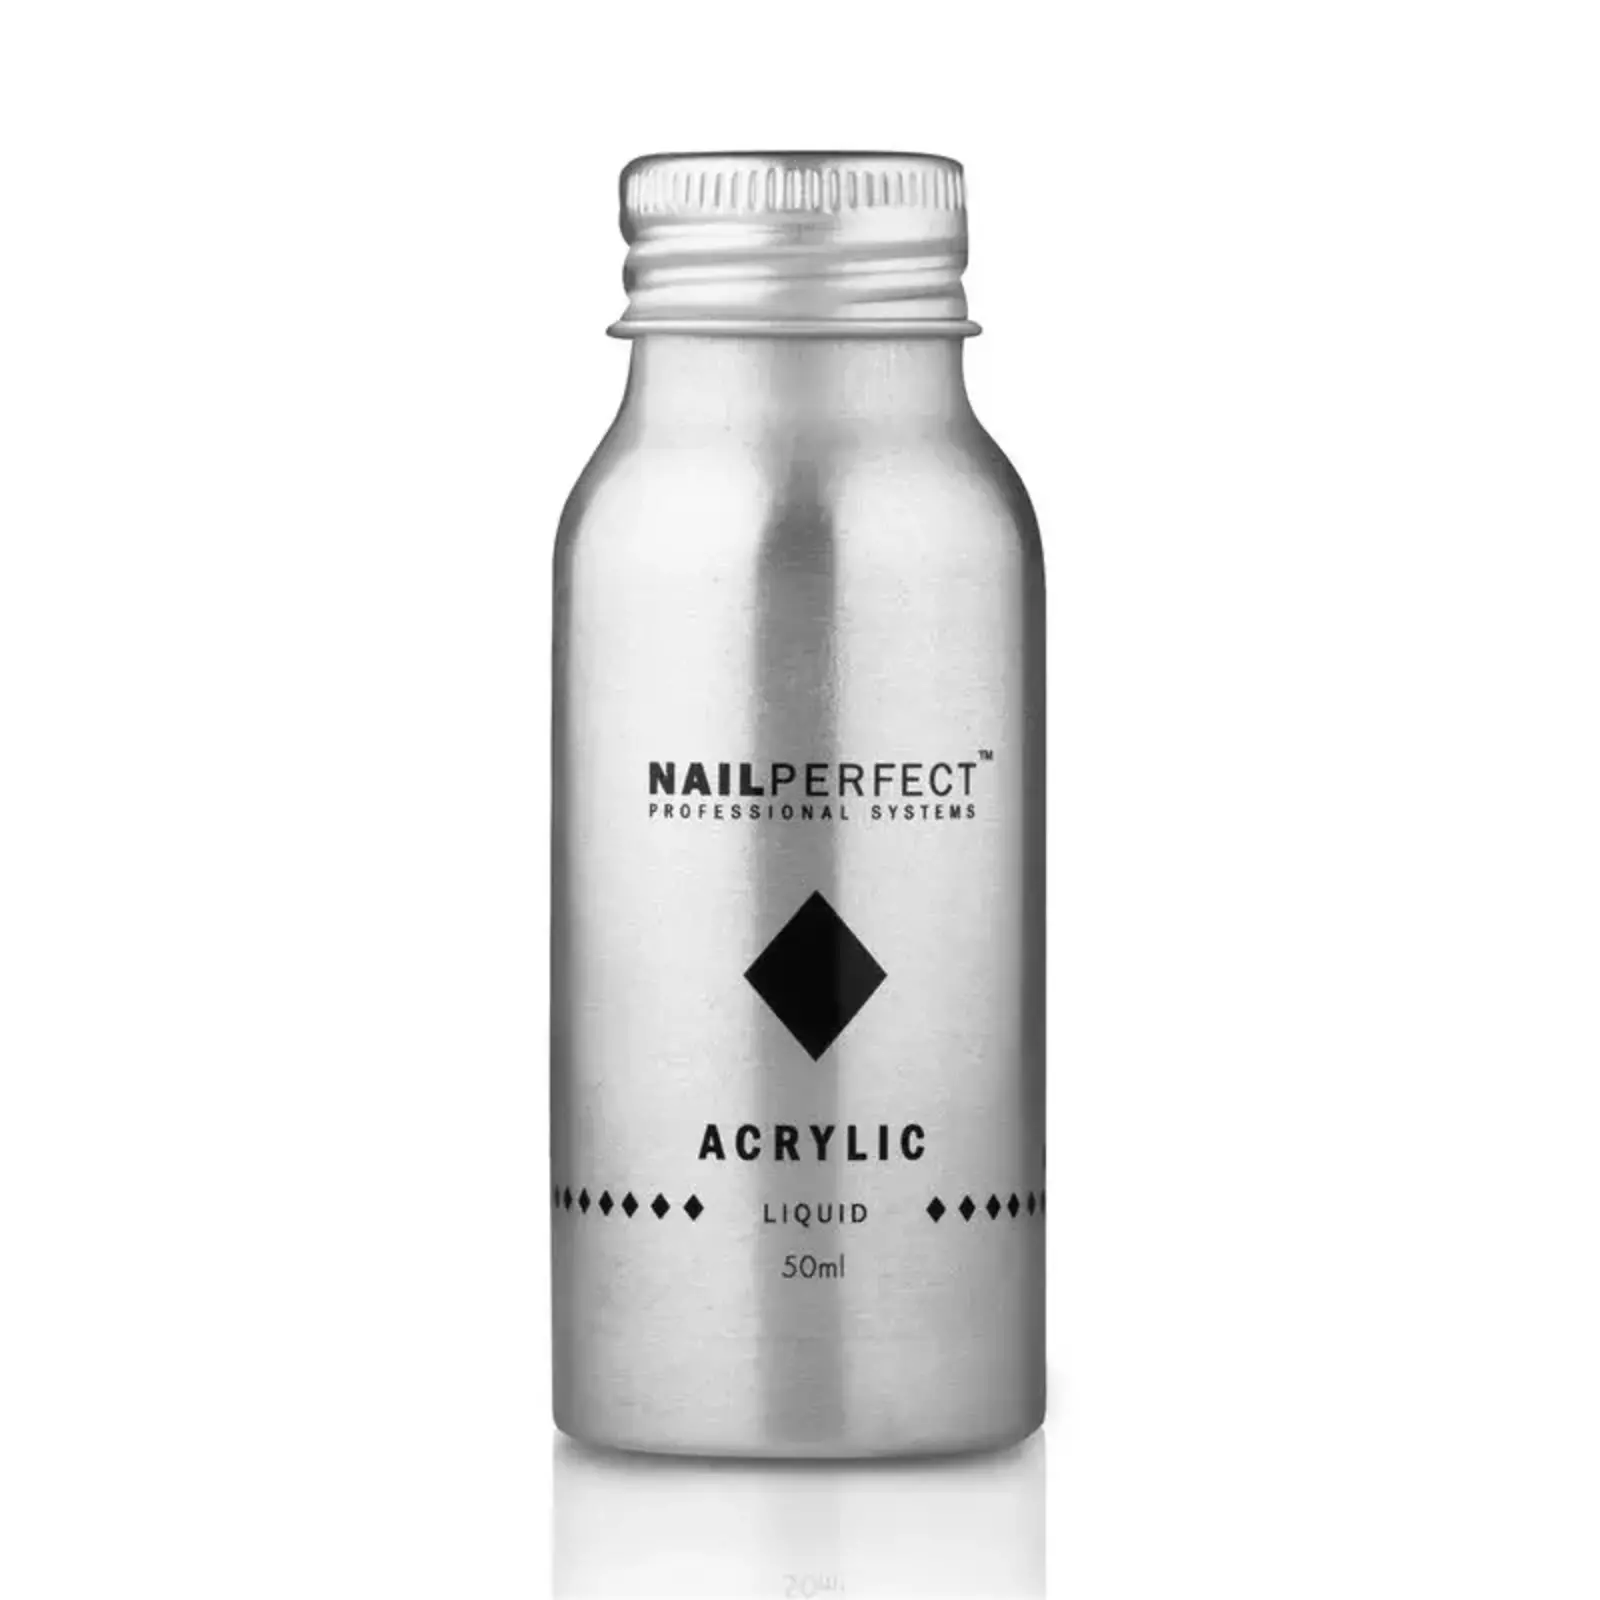 NailPerfect Nail Perfect Acrylic Liquid 50ml